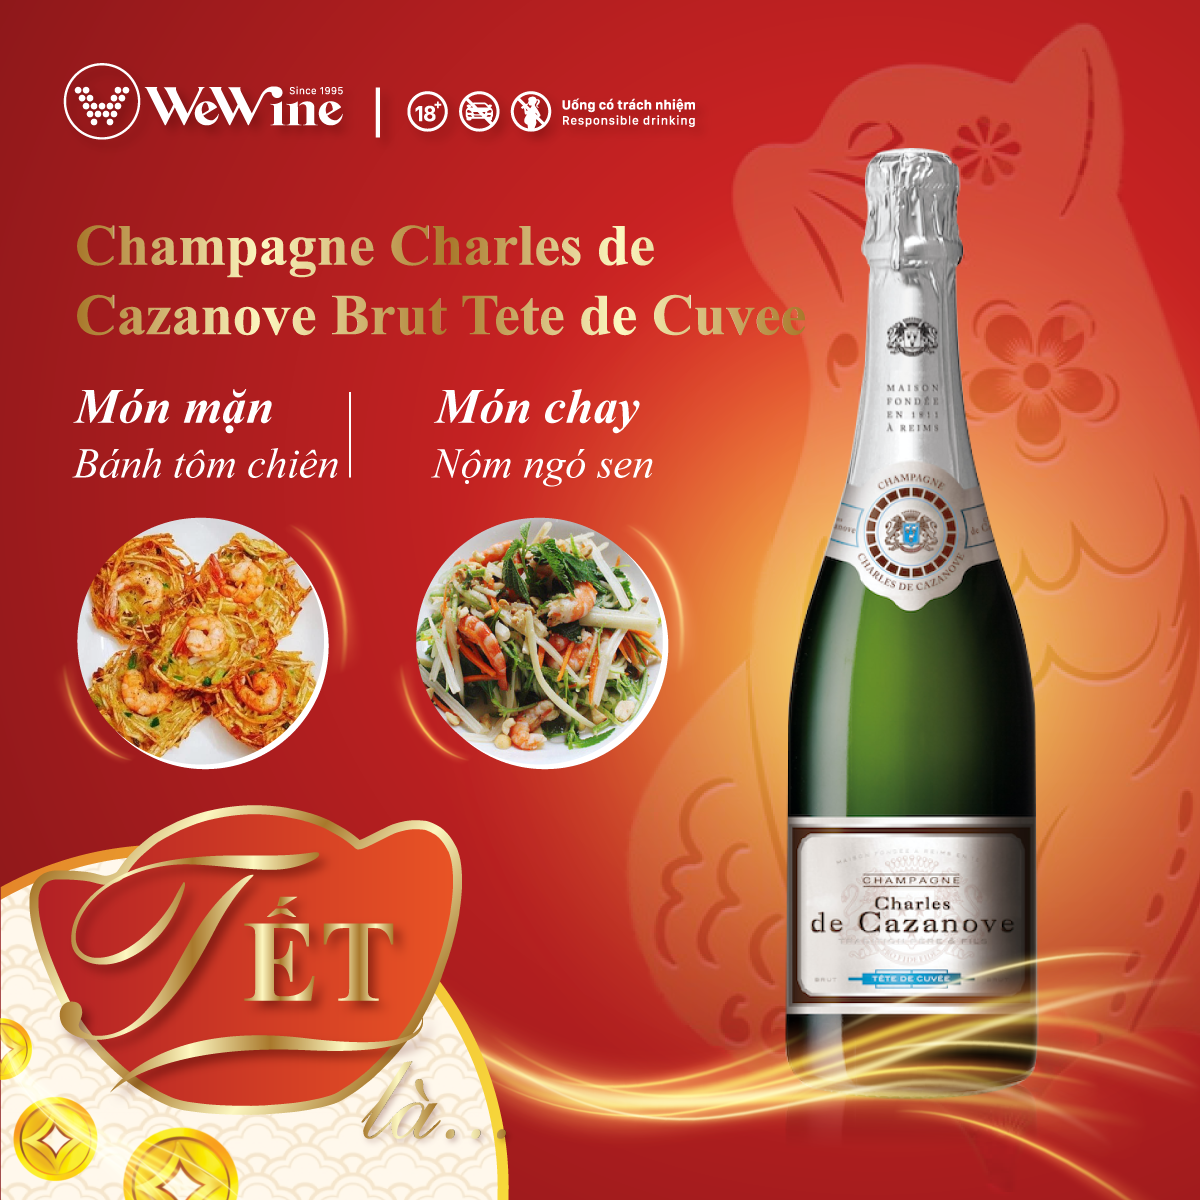 Rượu Champagne Charles de Cazanove Brut Tete de Cuvee và món Việt